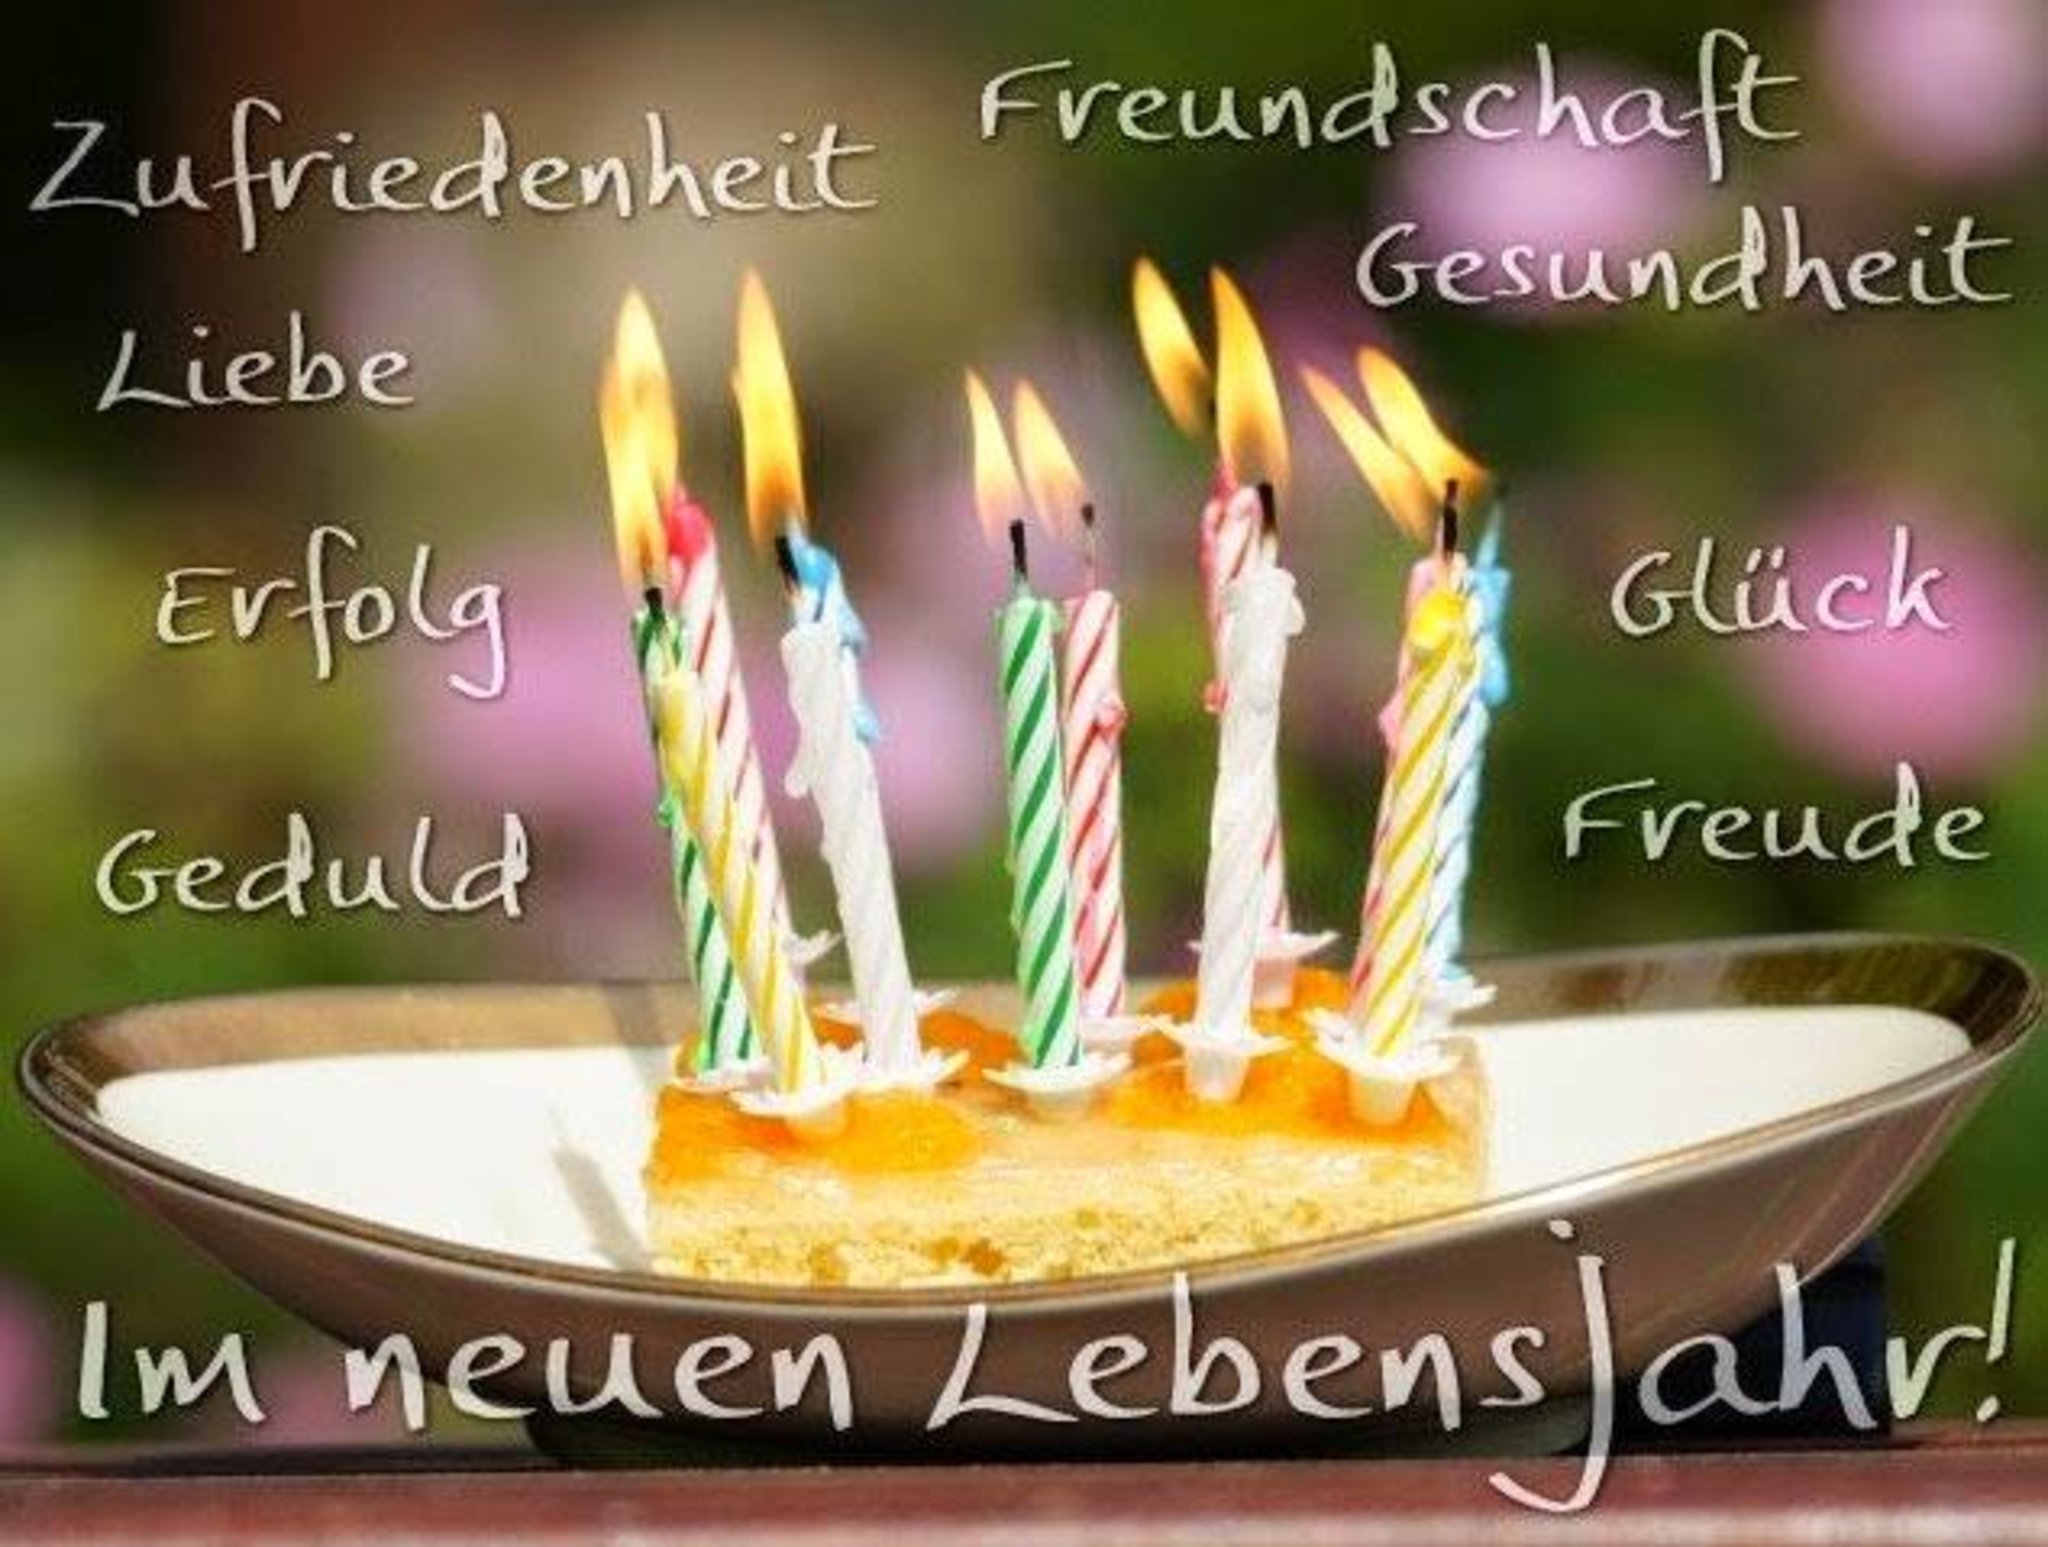 Открытка с днем рождения на немецком мужчине. Поздравление с днем рождения на немецком. Открытка с днём рождения на немецком языке. Поздравление с др на немецком языке. Поздравления с днём рождения мужчине на немецком языке.